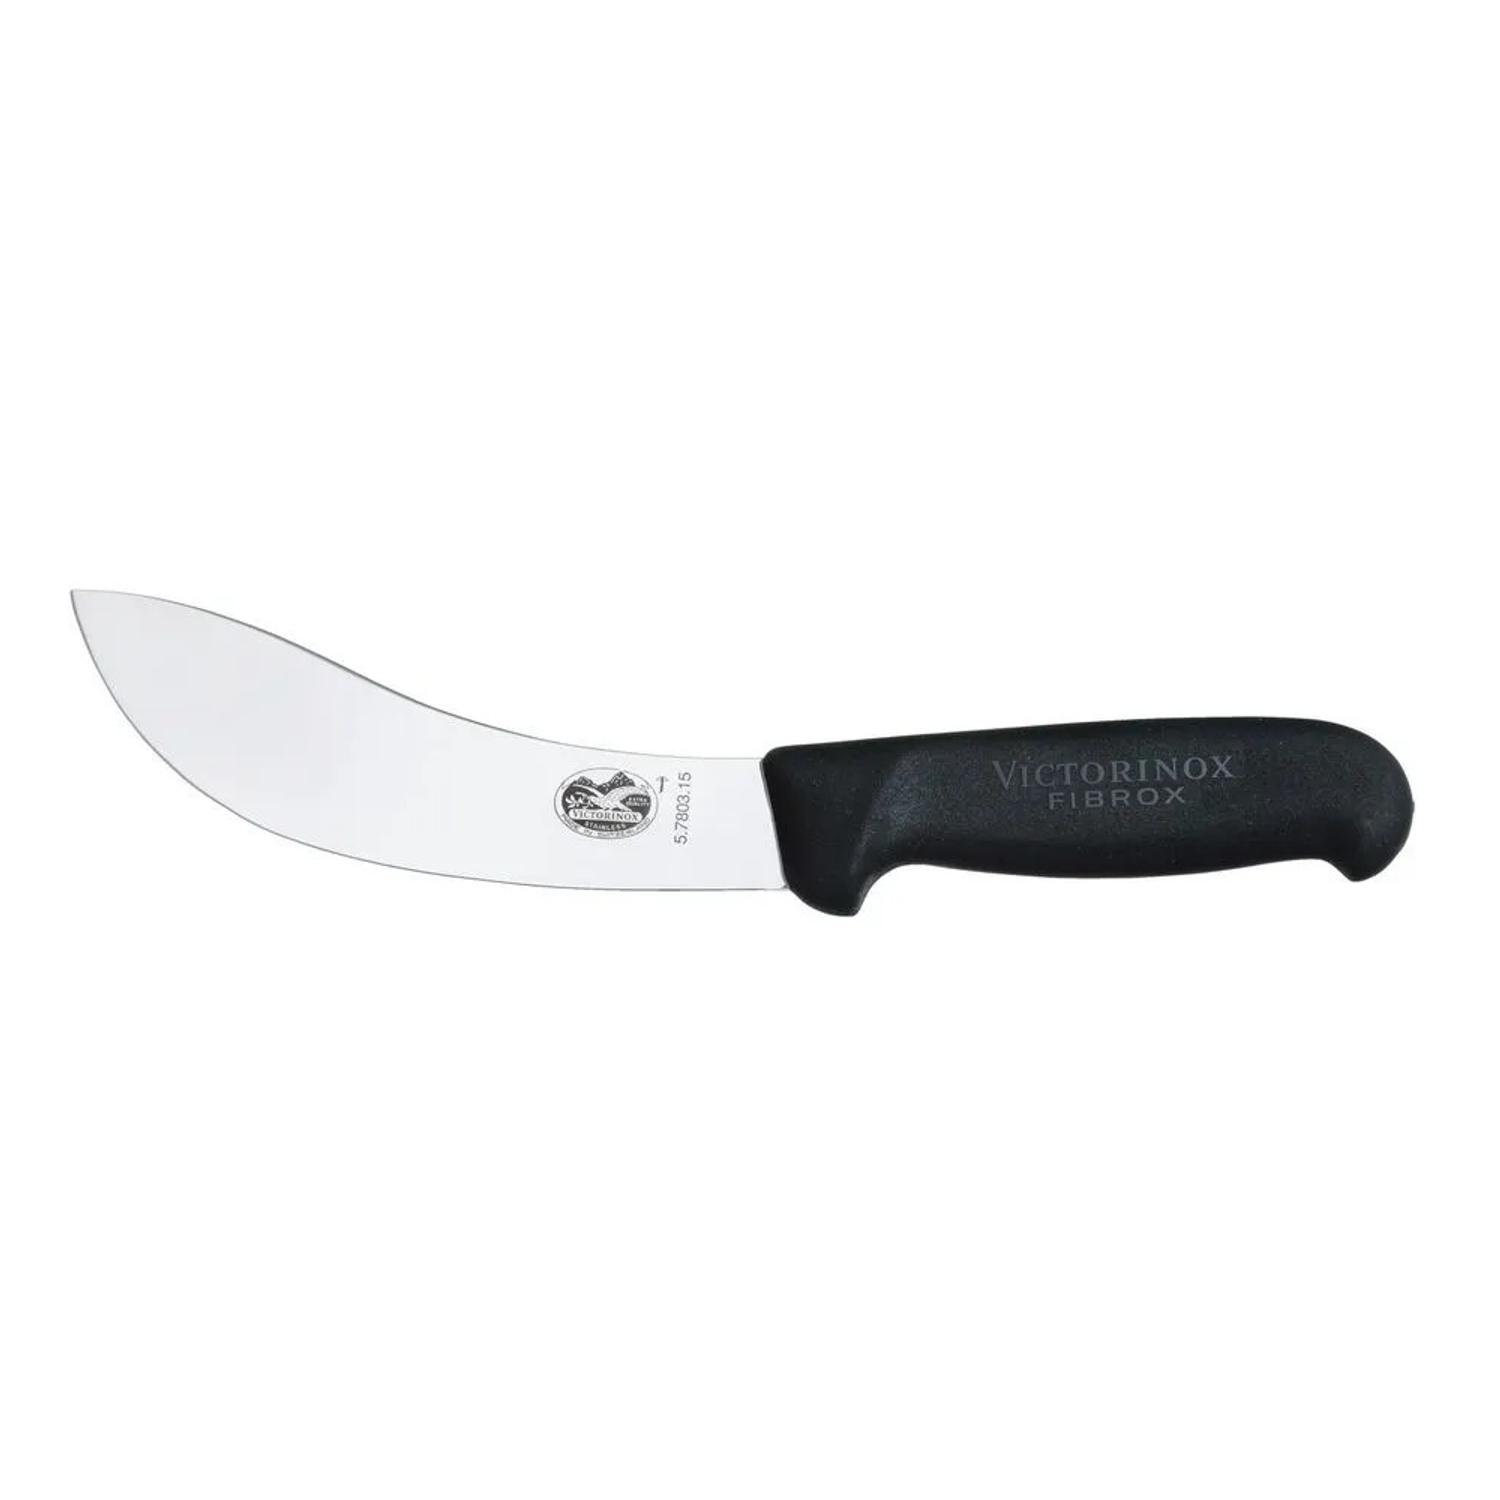 Нож кухонный Victorinox Skinning 5.7803.15 стальной разделочный - фото 1